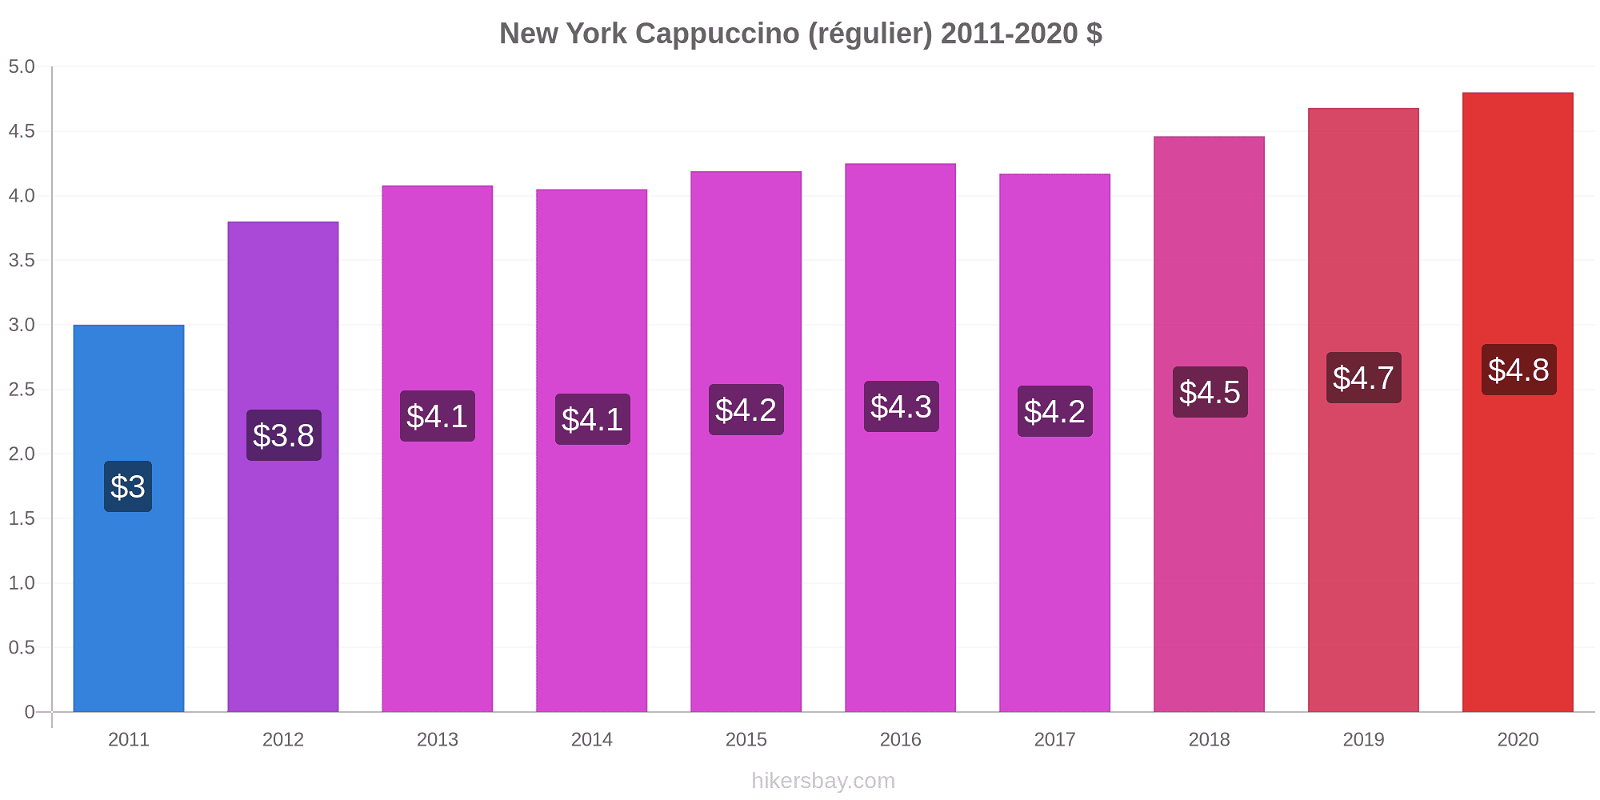 New York changements de prix Cappuccino (régulier) hikersbay.com